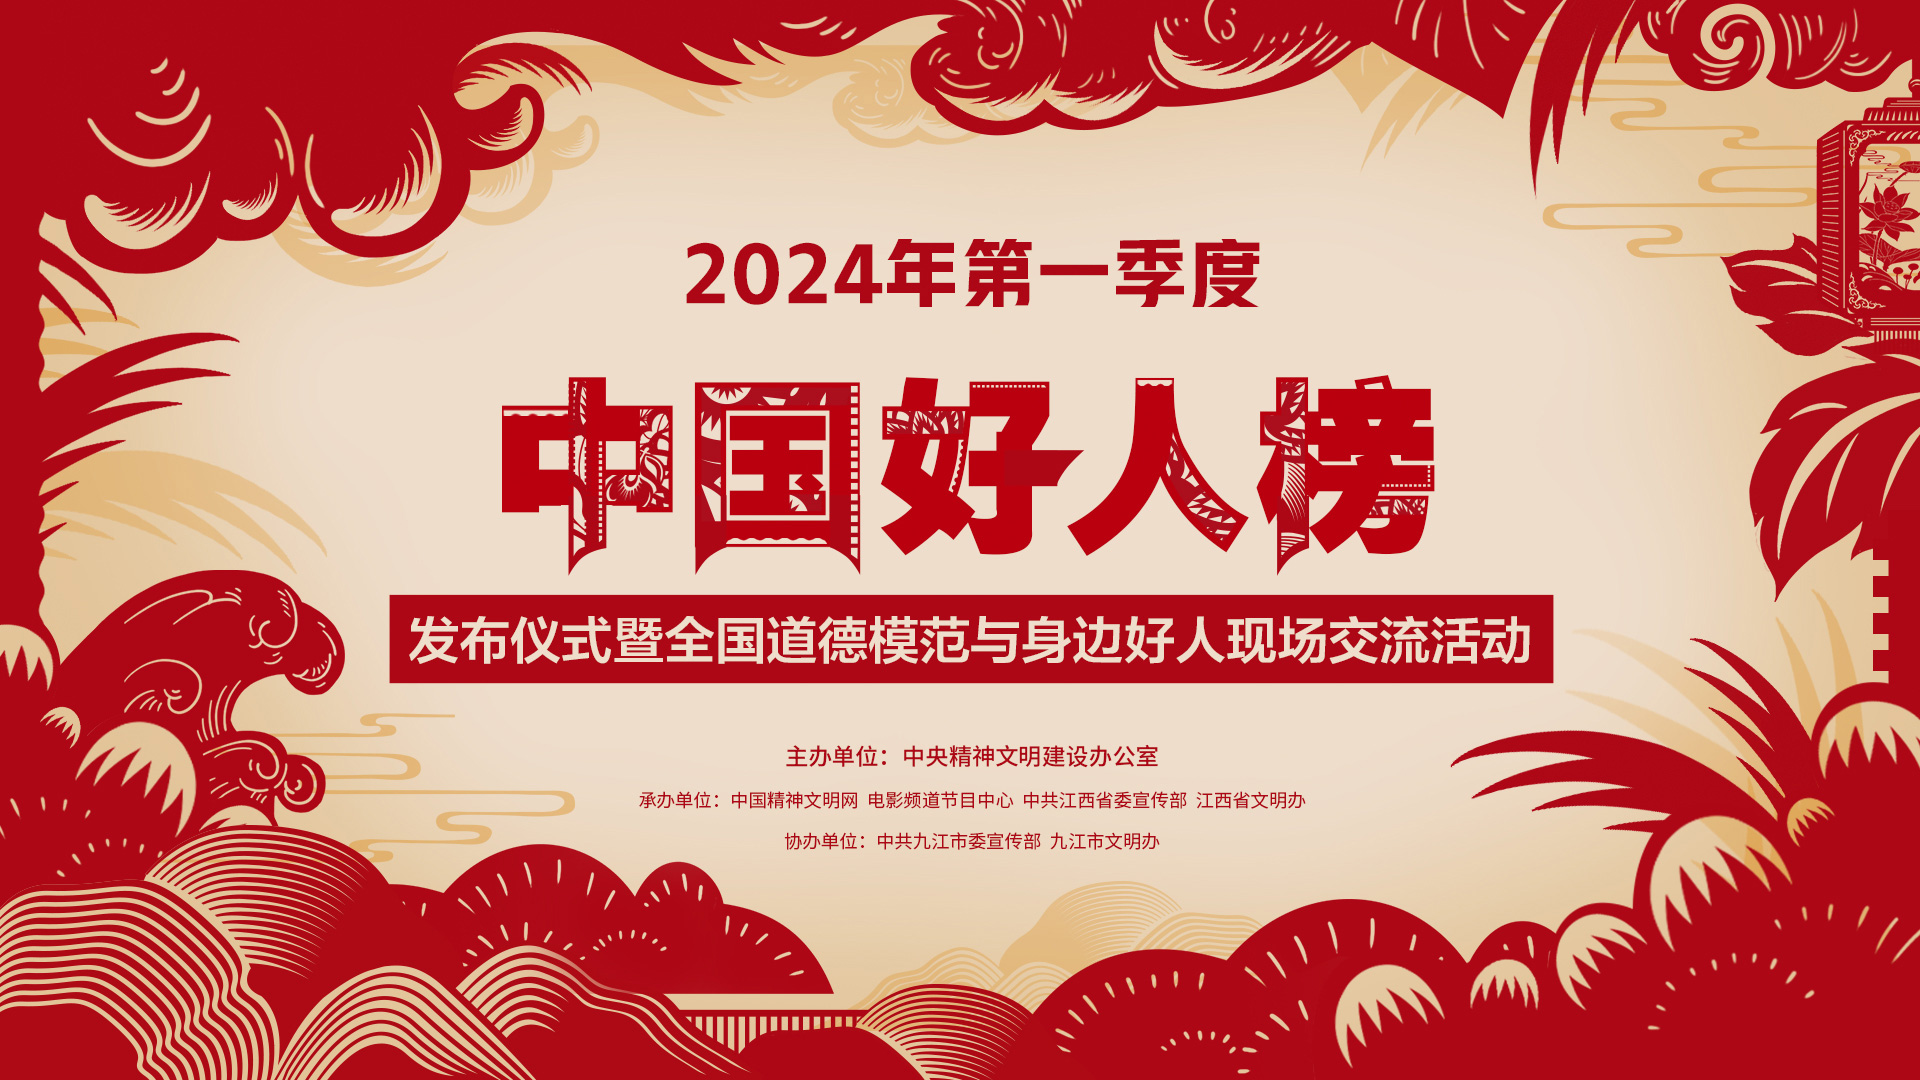 2024年第一季度“中国好人榜”发布活动